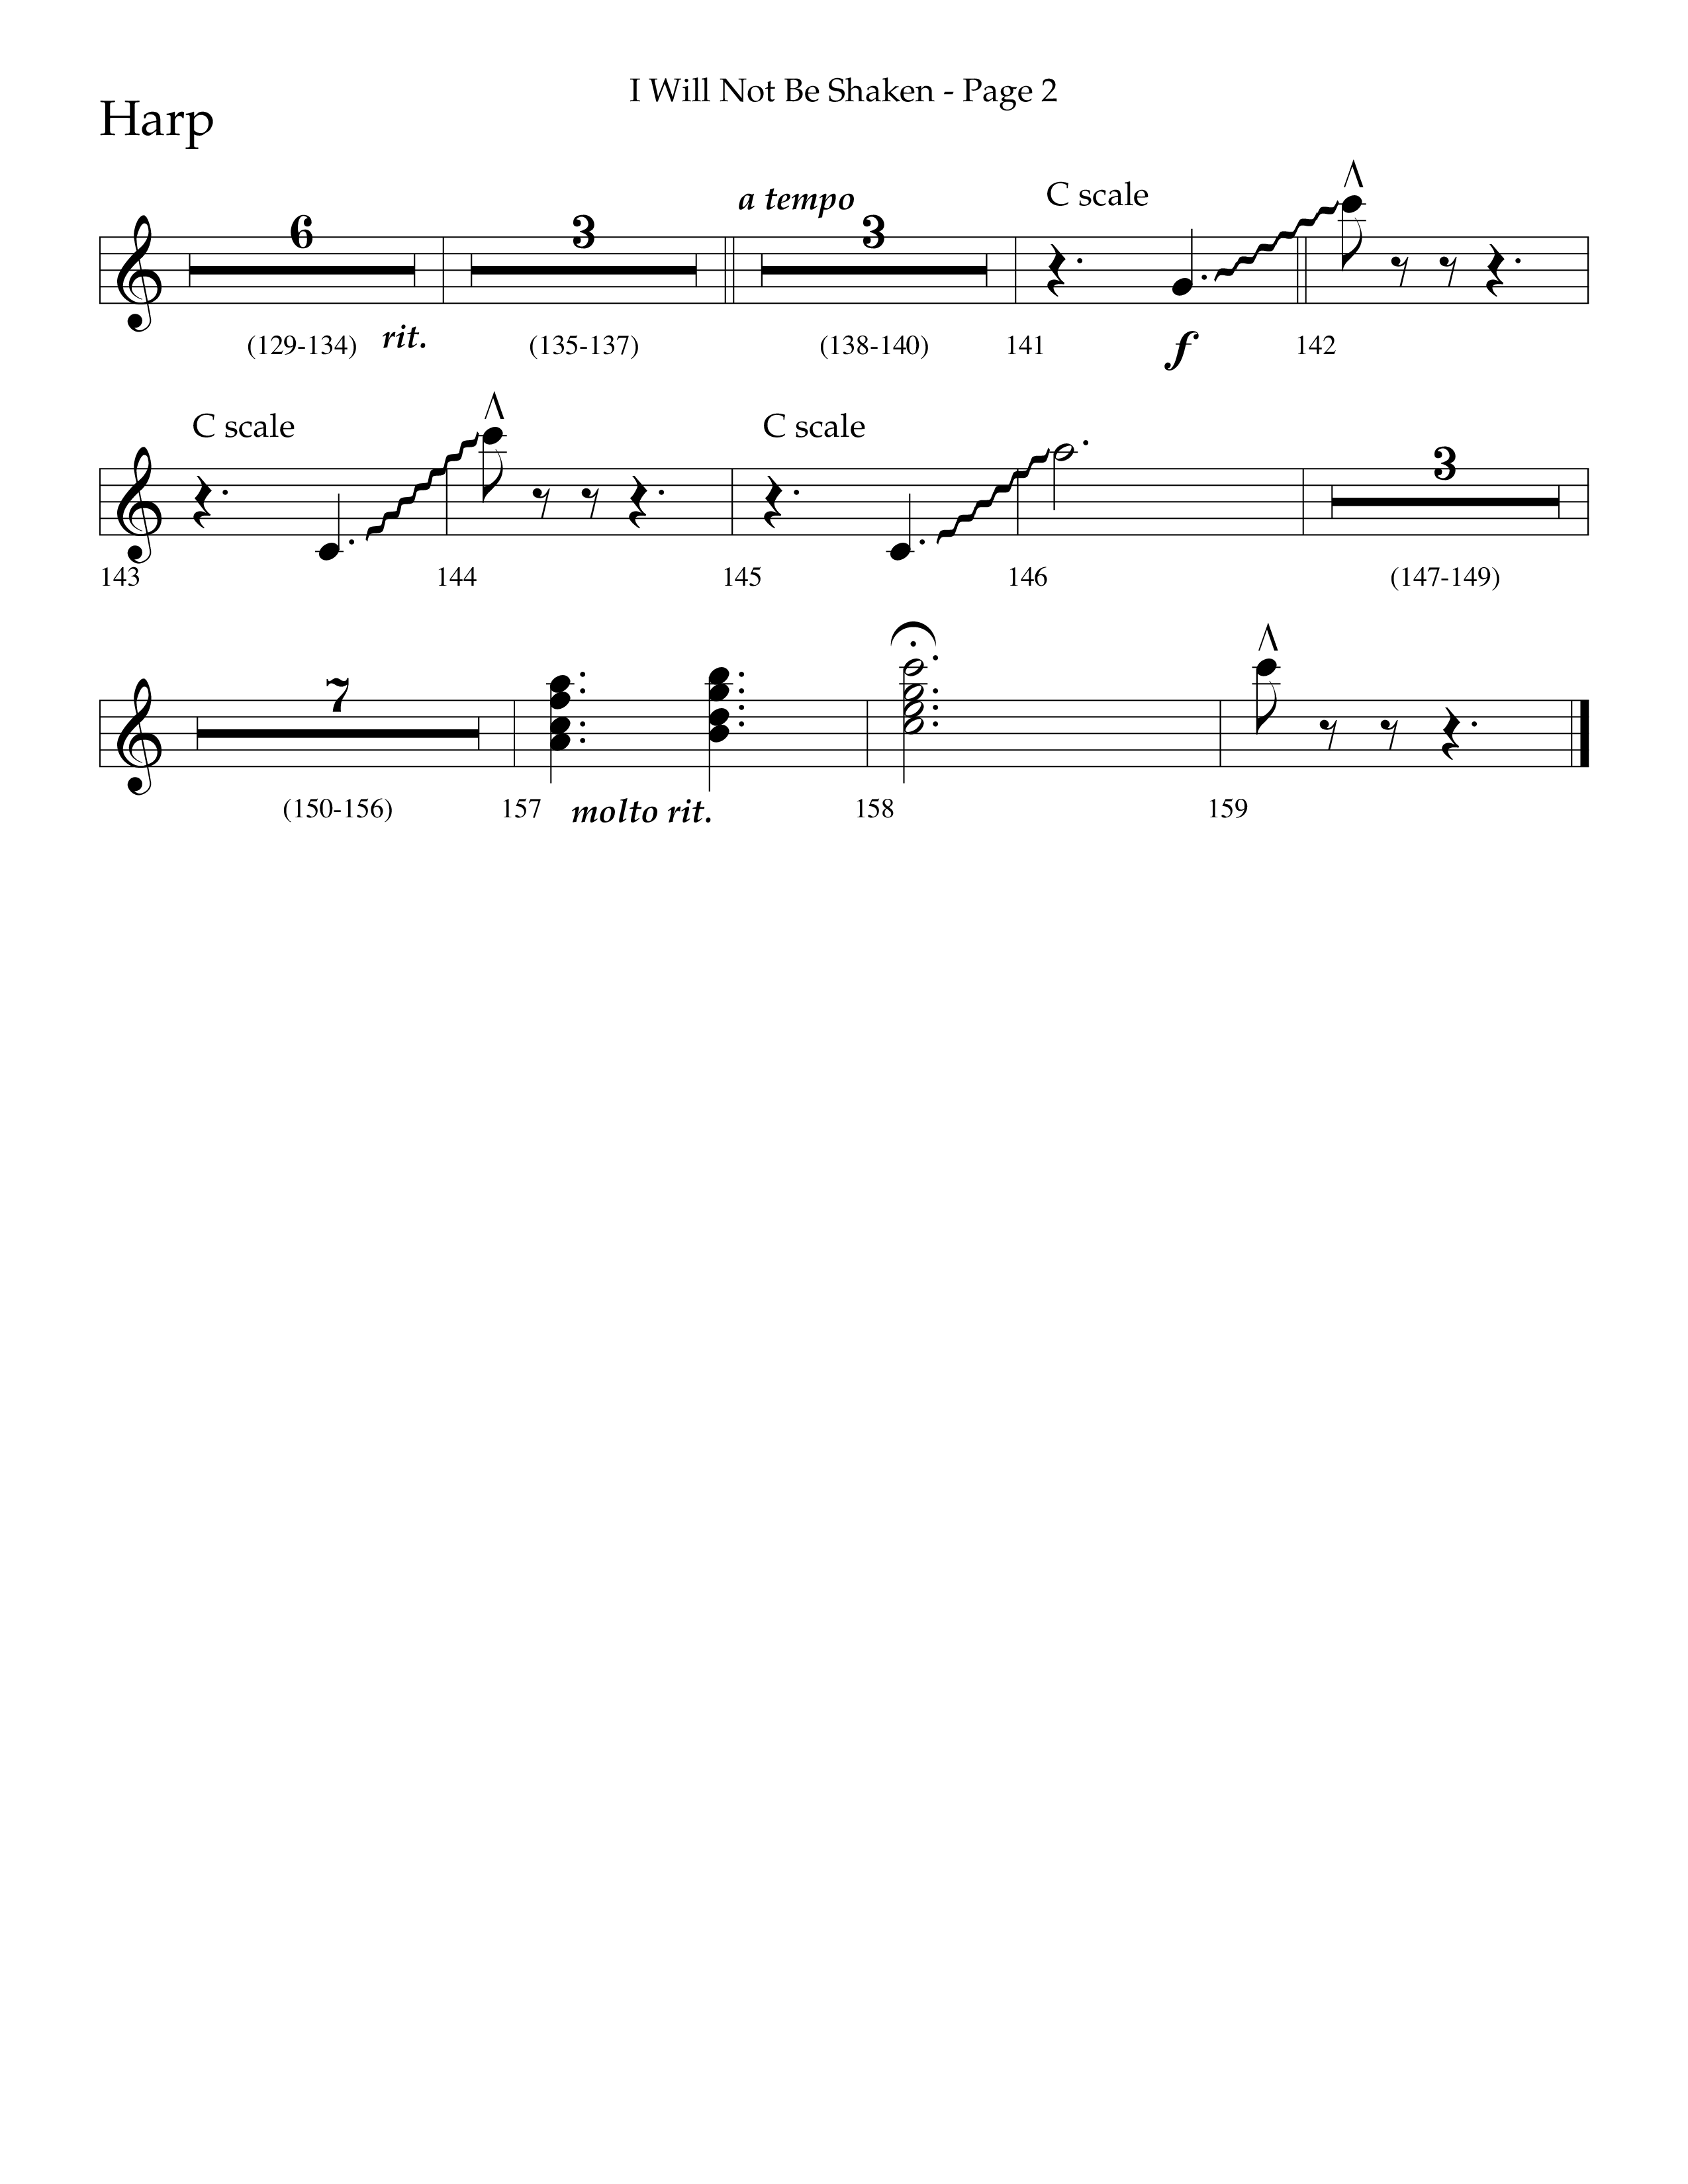 I Will Not Be Shaken (Choral Anthem SATB) Harp (Lifeway Choral / Arr. Cliff Duren)